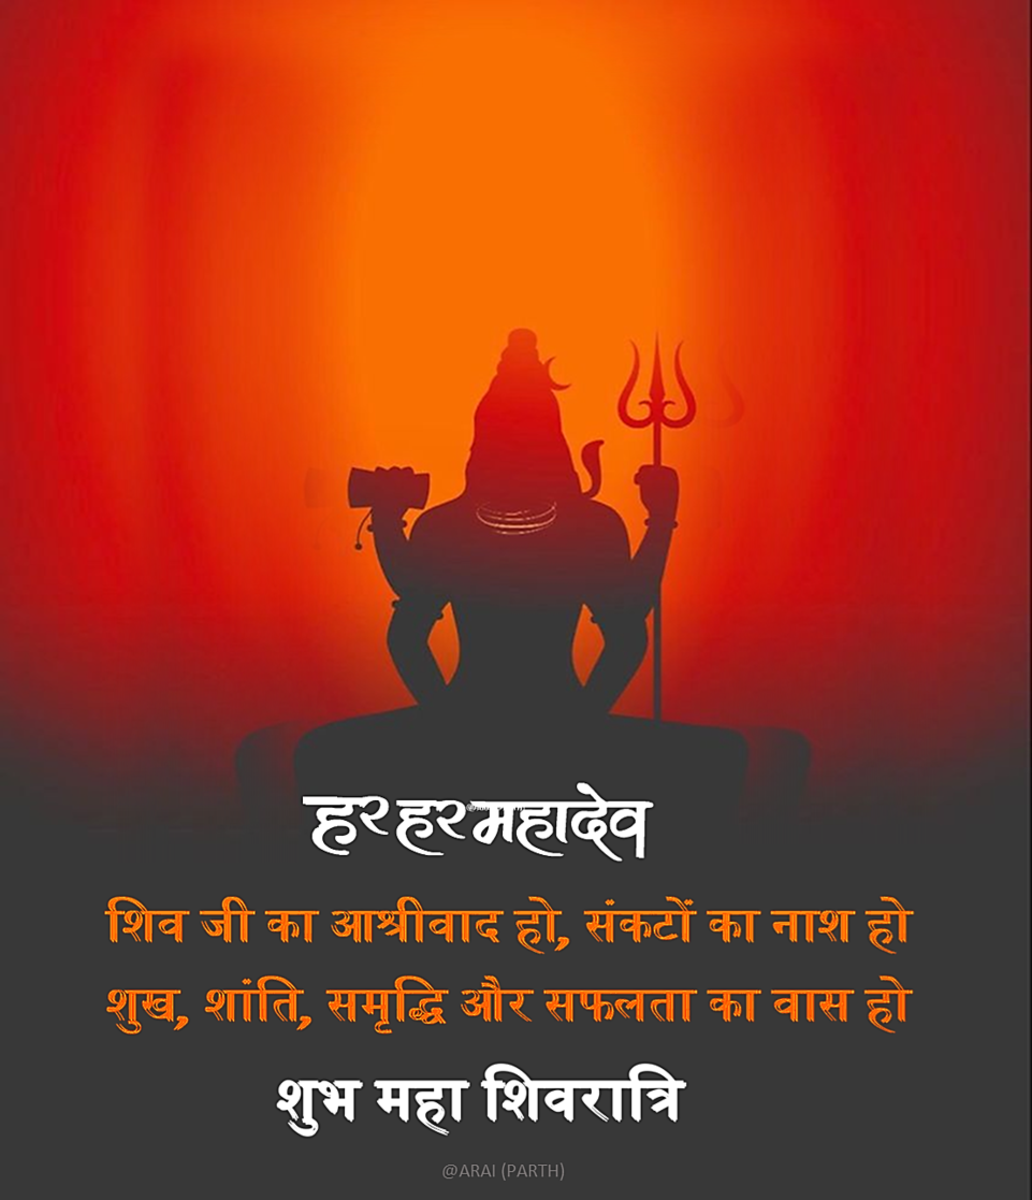 Happy Maha Shivaratri wishes in Hindi